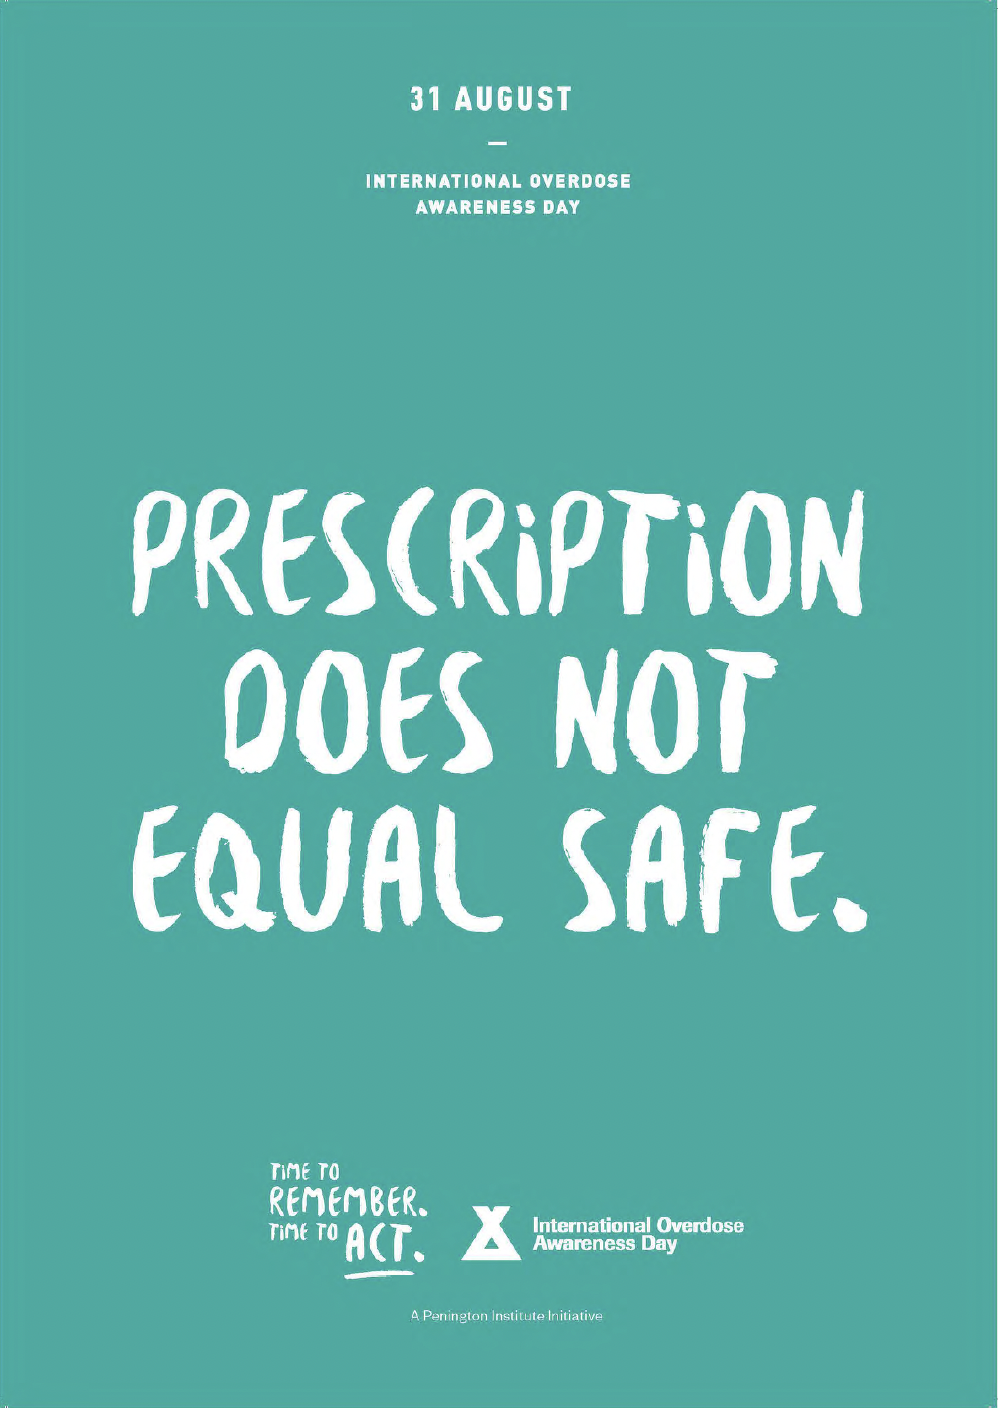 Prescription Not Equal Safe.png